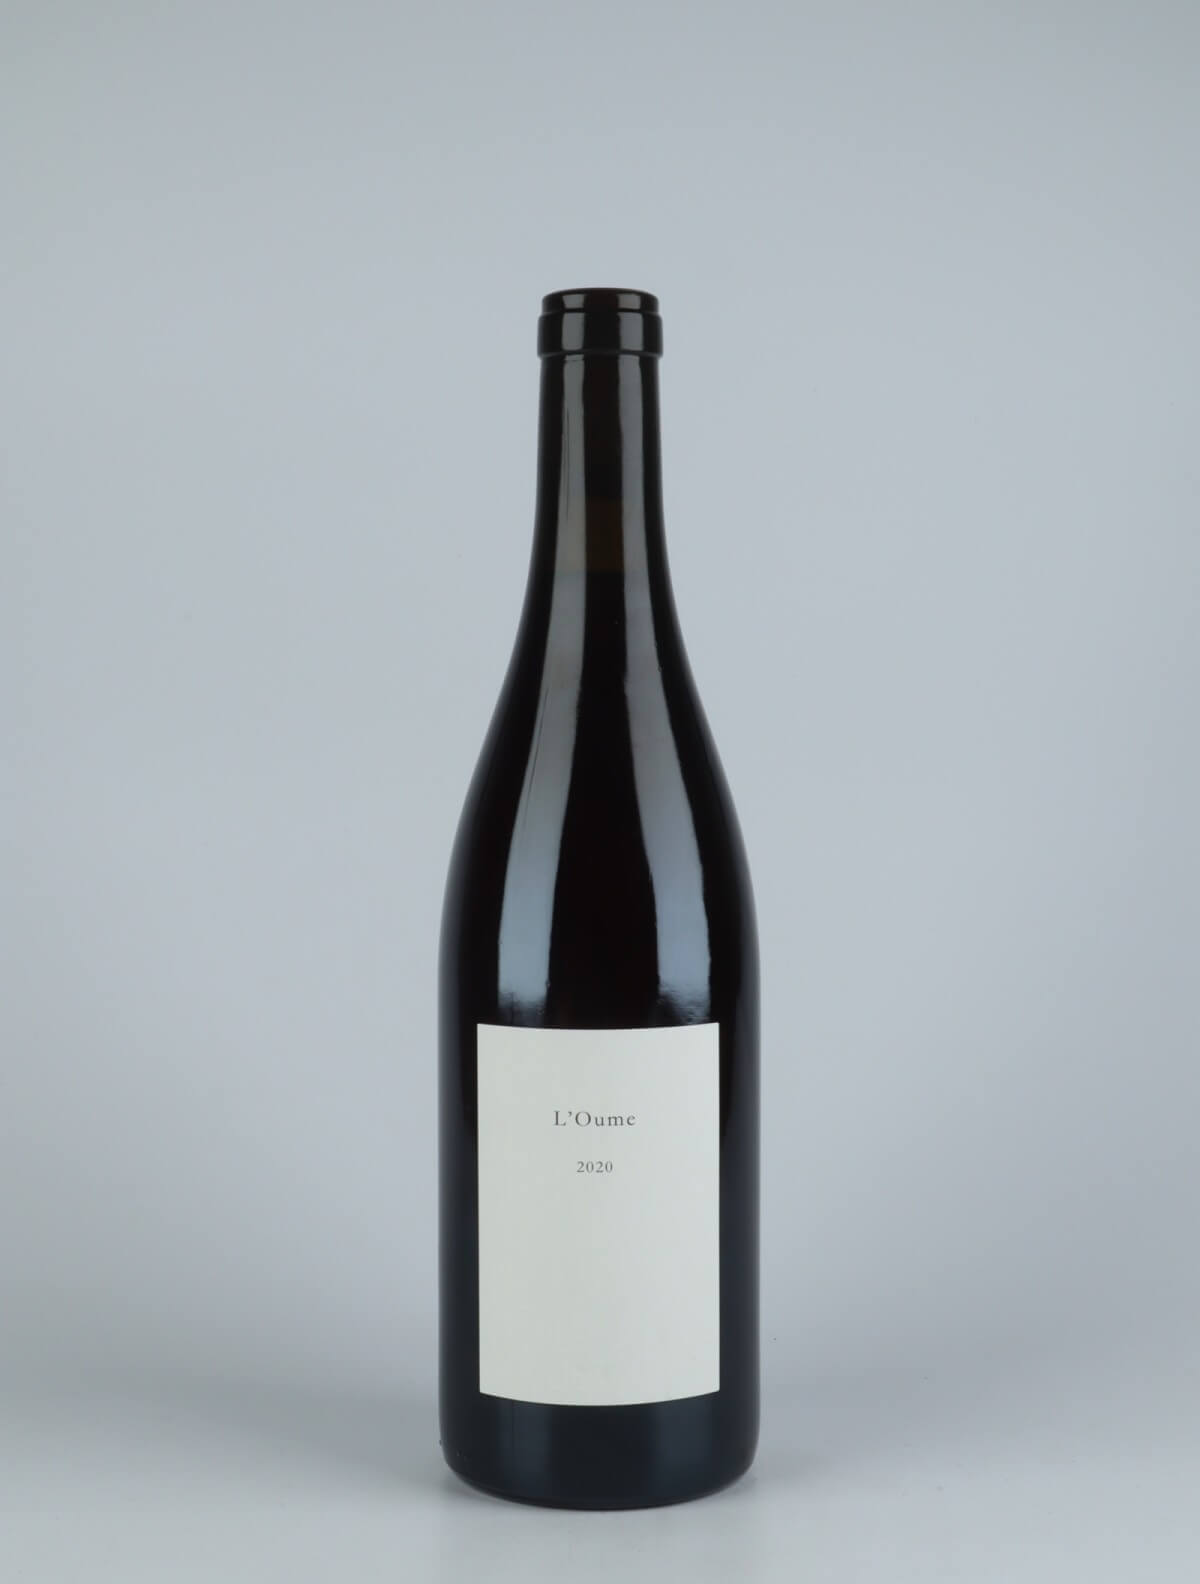 En flaske 2020 L'Oume Rødvin fra Les Frères Soulier, Rhône i Frankrig